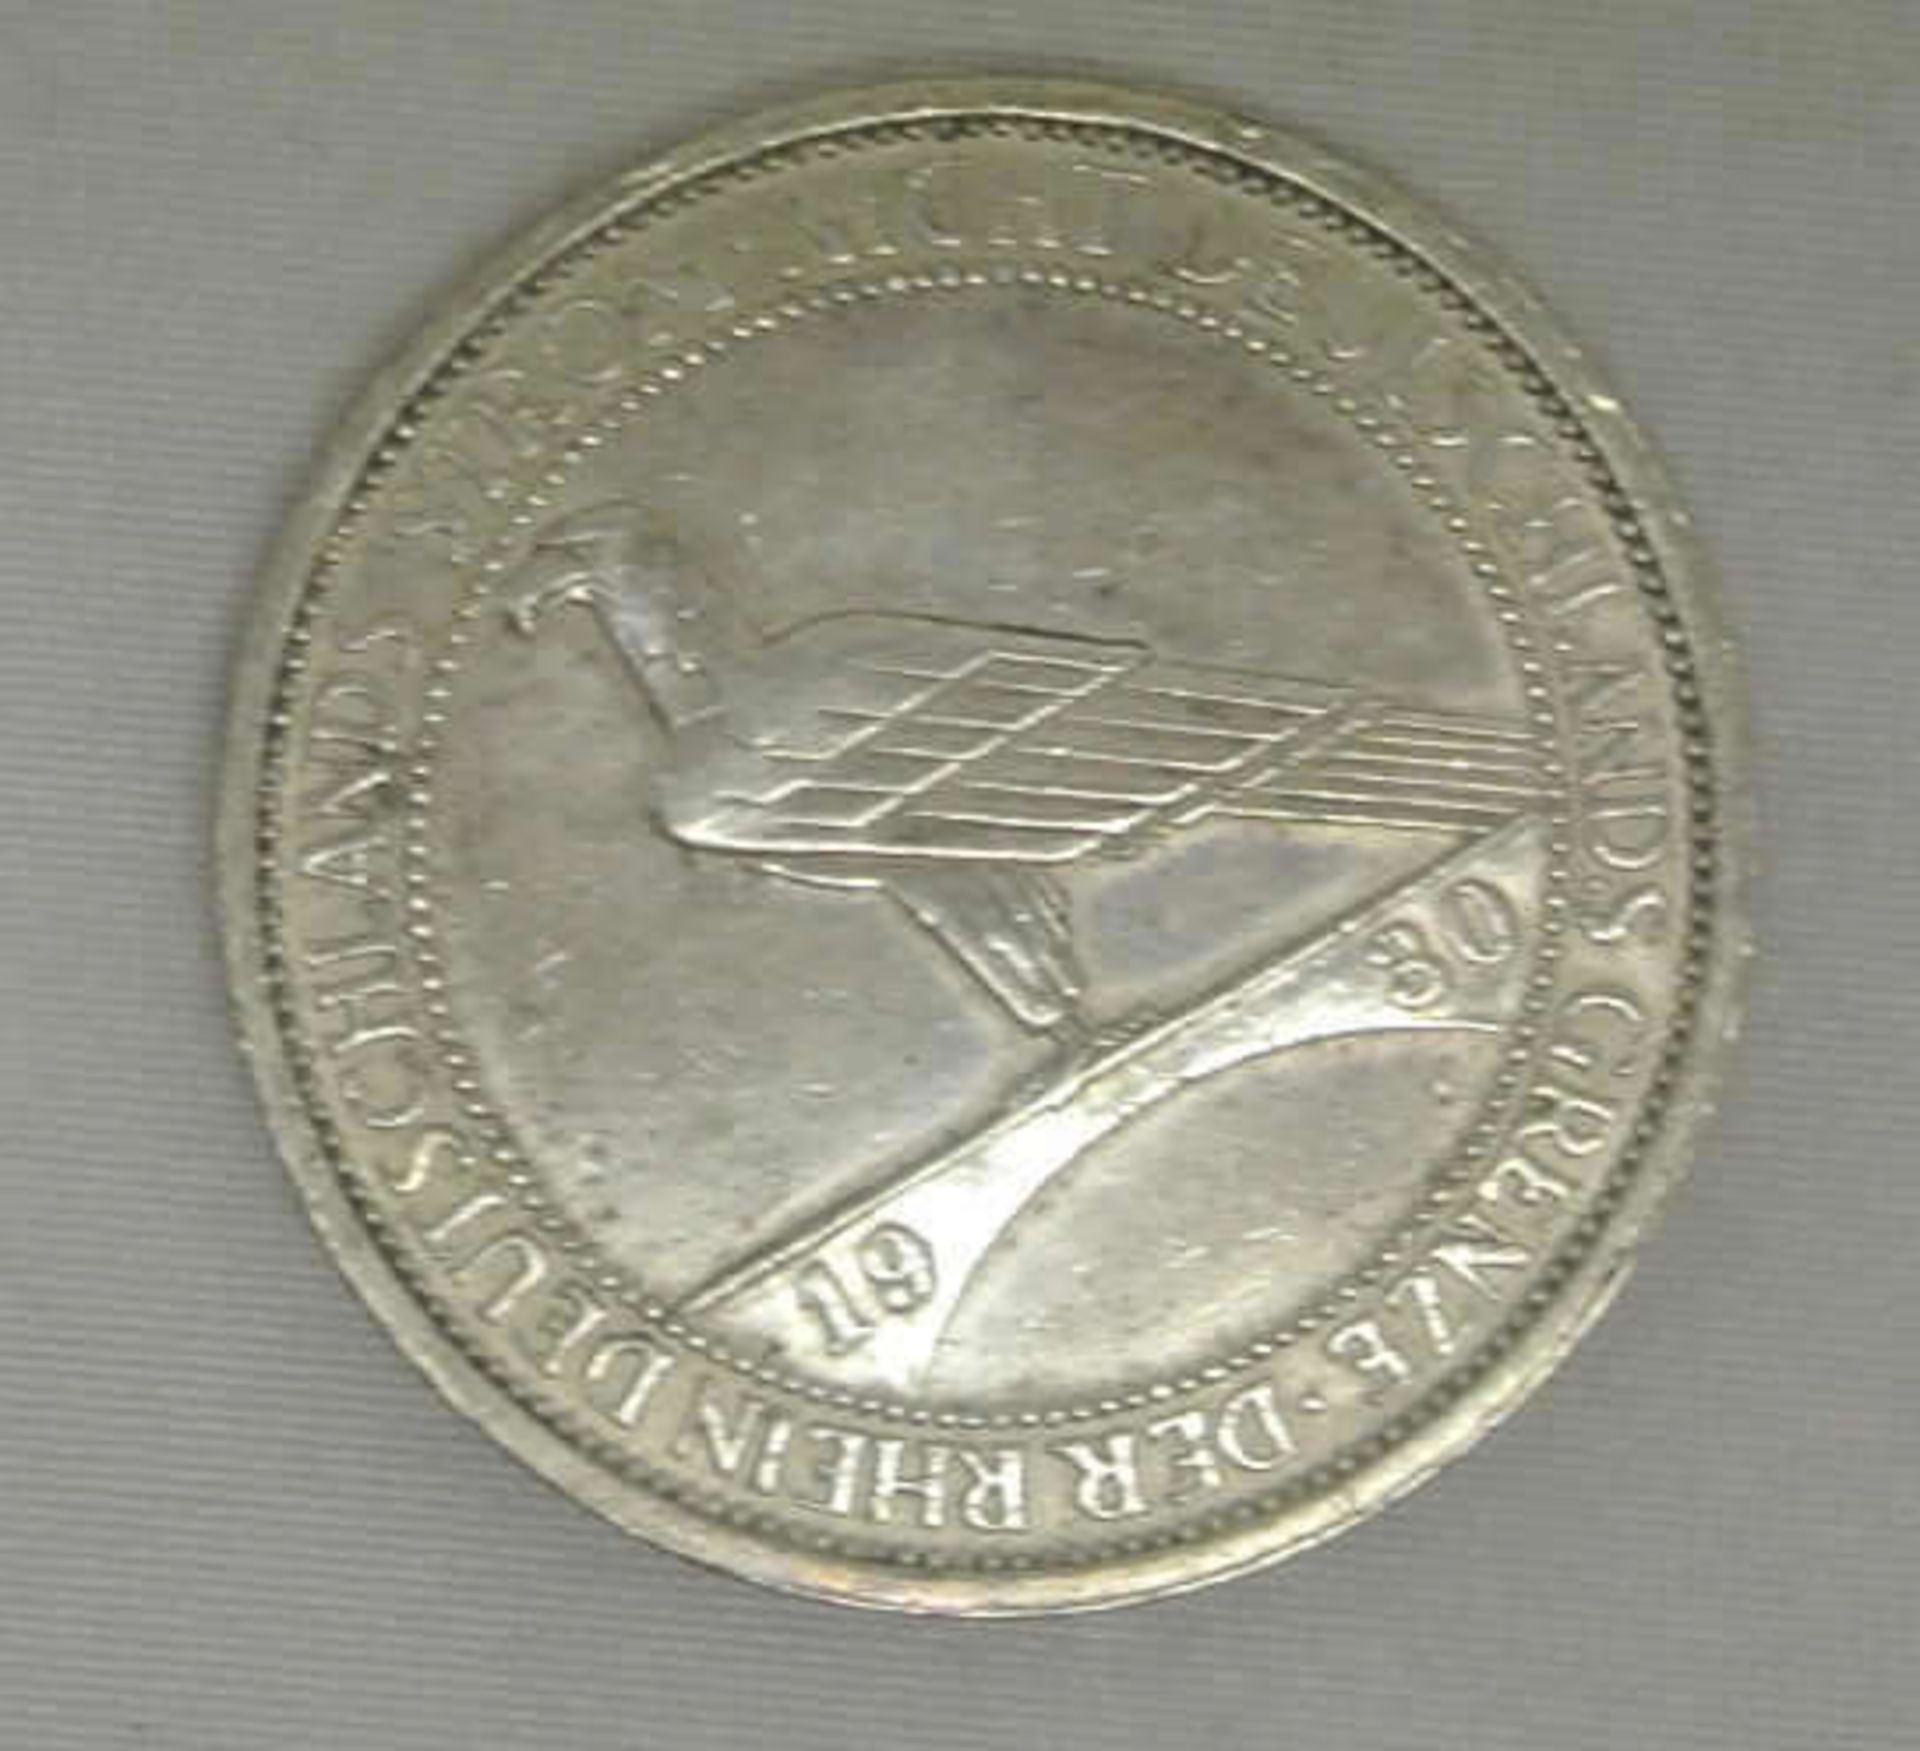 Weimarer Republik, 3 Mark, 1930 D, Silbermünze, "Rheinlandräumung", Jäger Nr. 345. Erhaltung: sehr